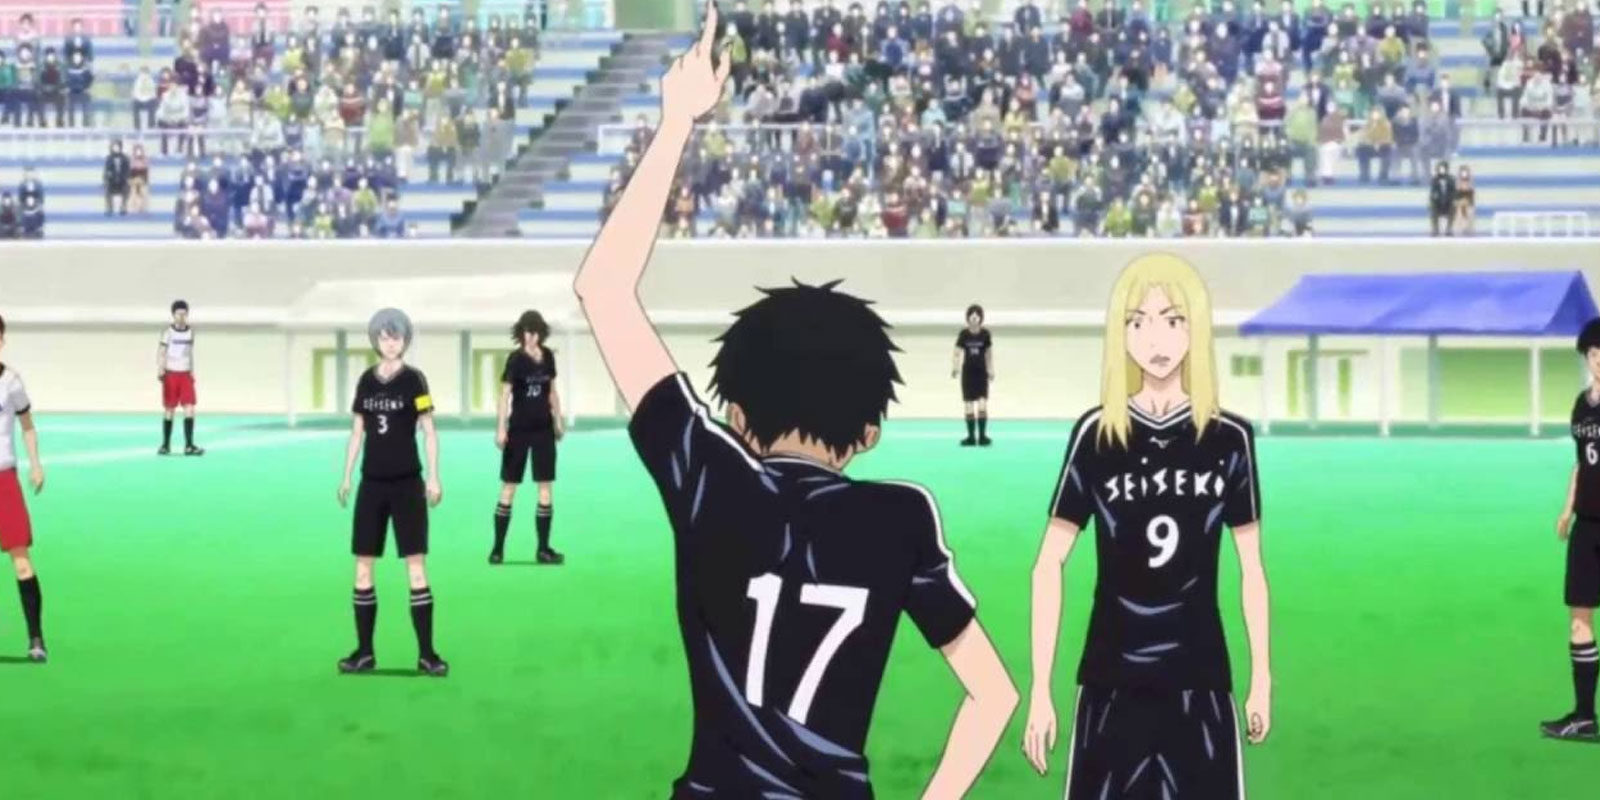 Secuela para el anime sobre fútbol 'DAYS'